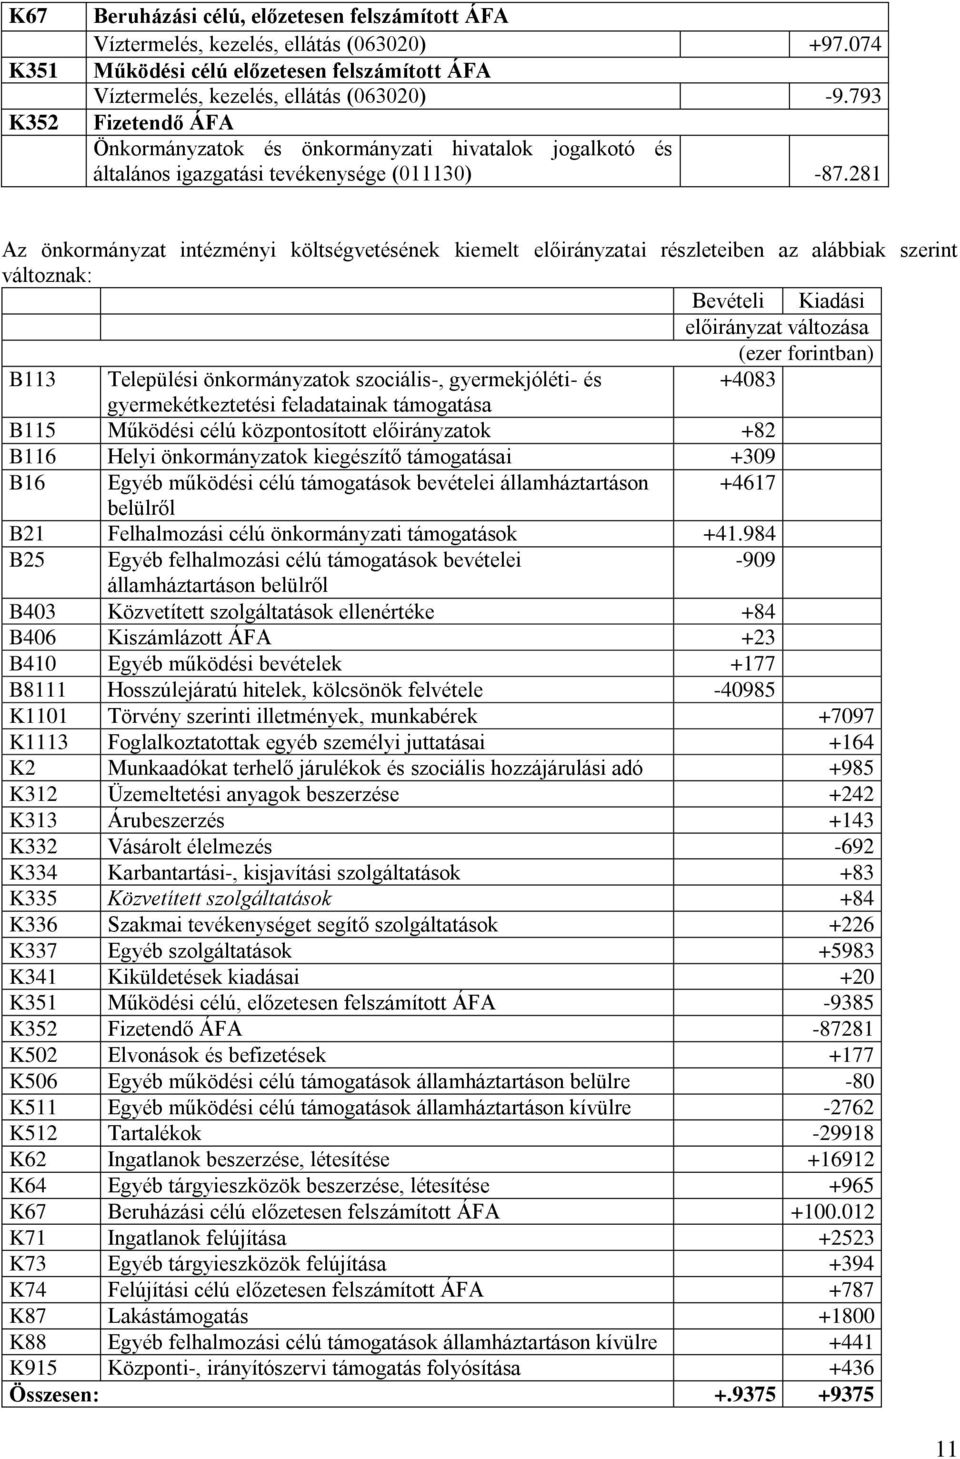 281 Az önkormányzat intézményi költségvetésének kiemelt előirányzatai részleteiben az alábbiak szerint változnak: B113 Települési önkormányzatok szociális-, gyermekjóléti- és +4083 gyermekétkeztetési